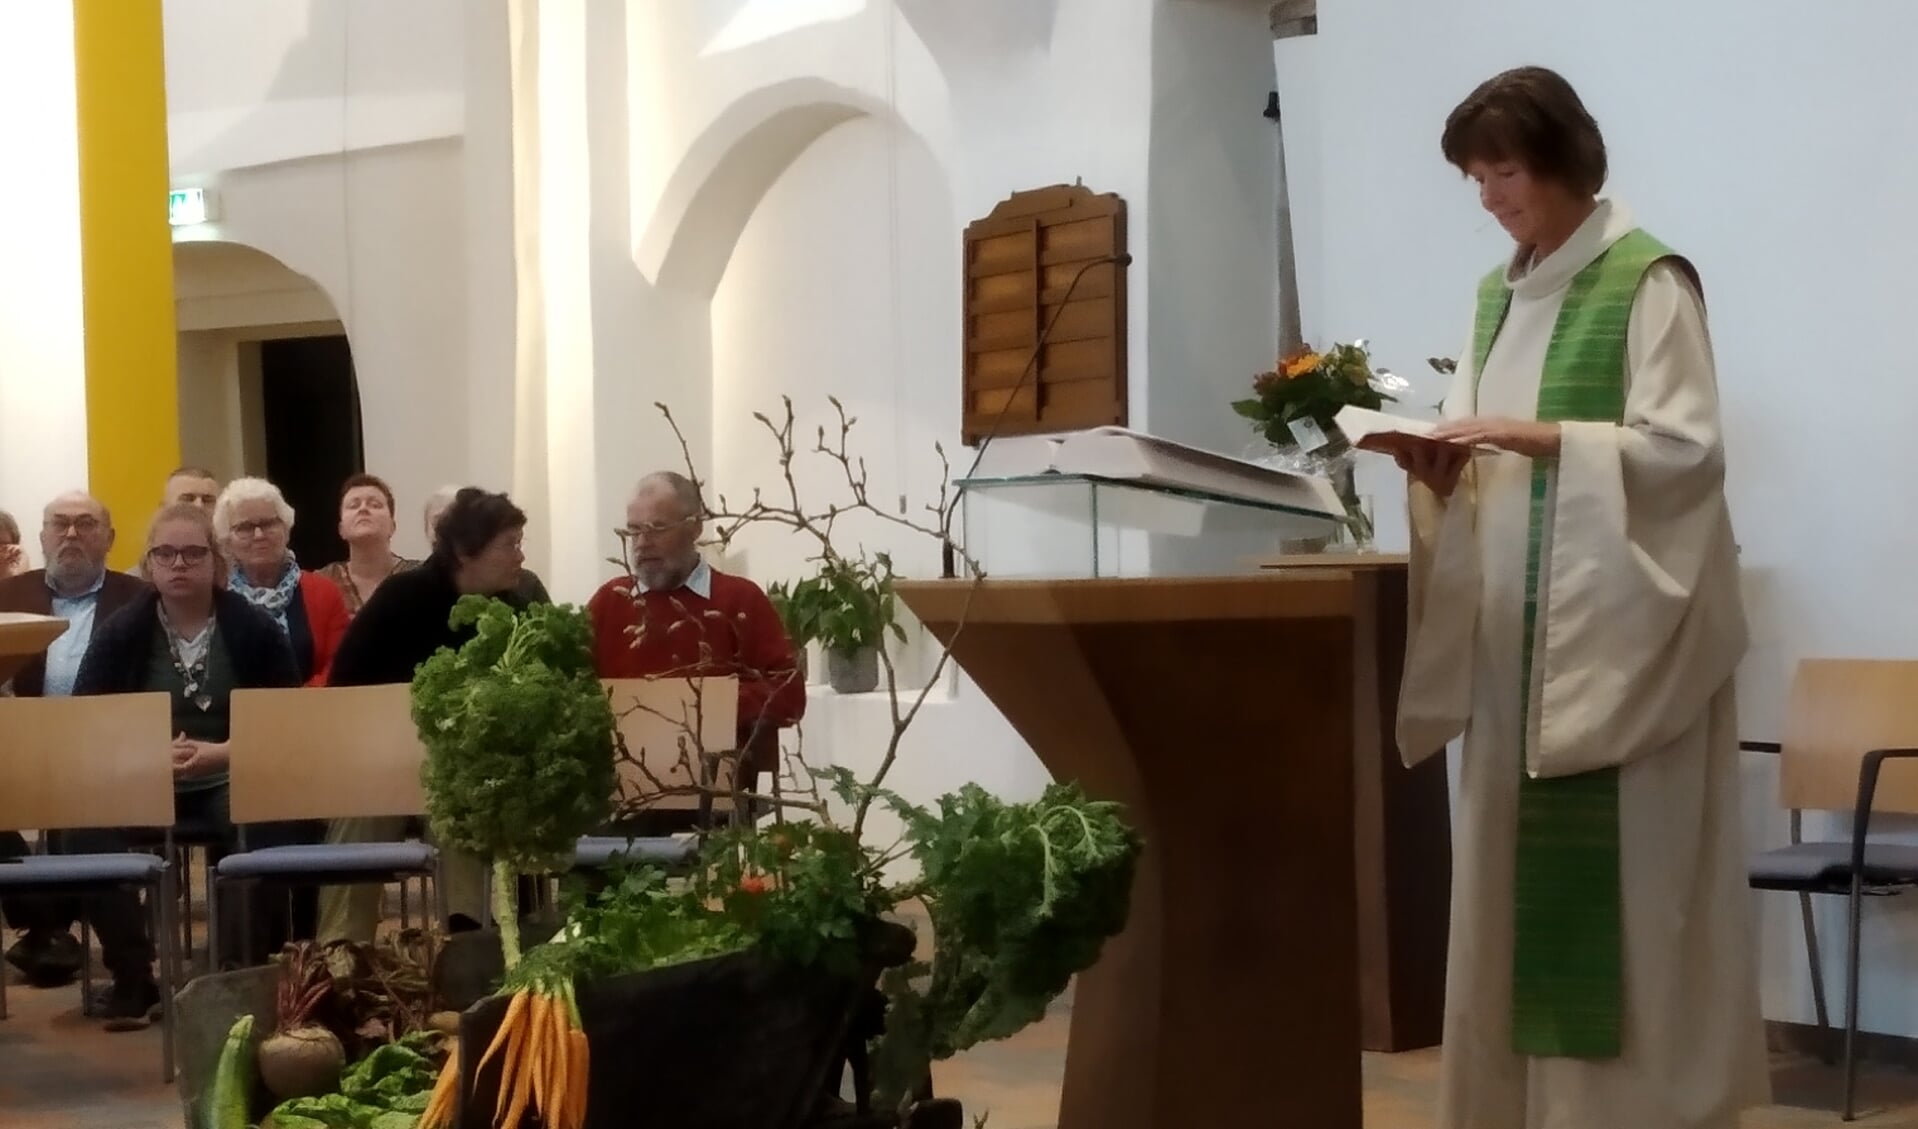 Een kruiwagen met groente en fruit midden in het liturgisch centrum verbeeldde tijdens de kerkdienst de rijke oogst. Foto: PR